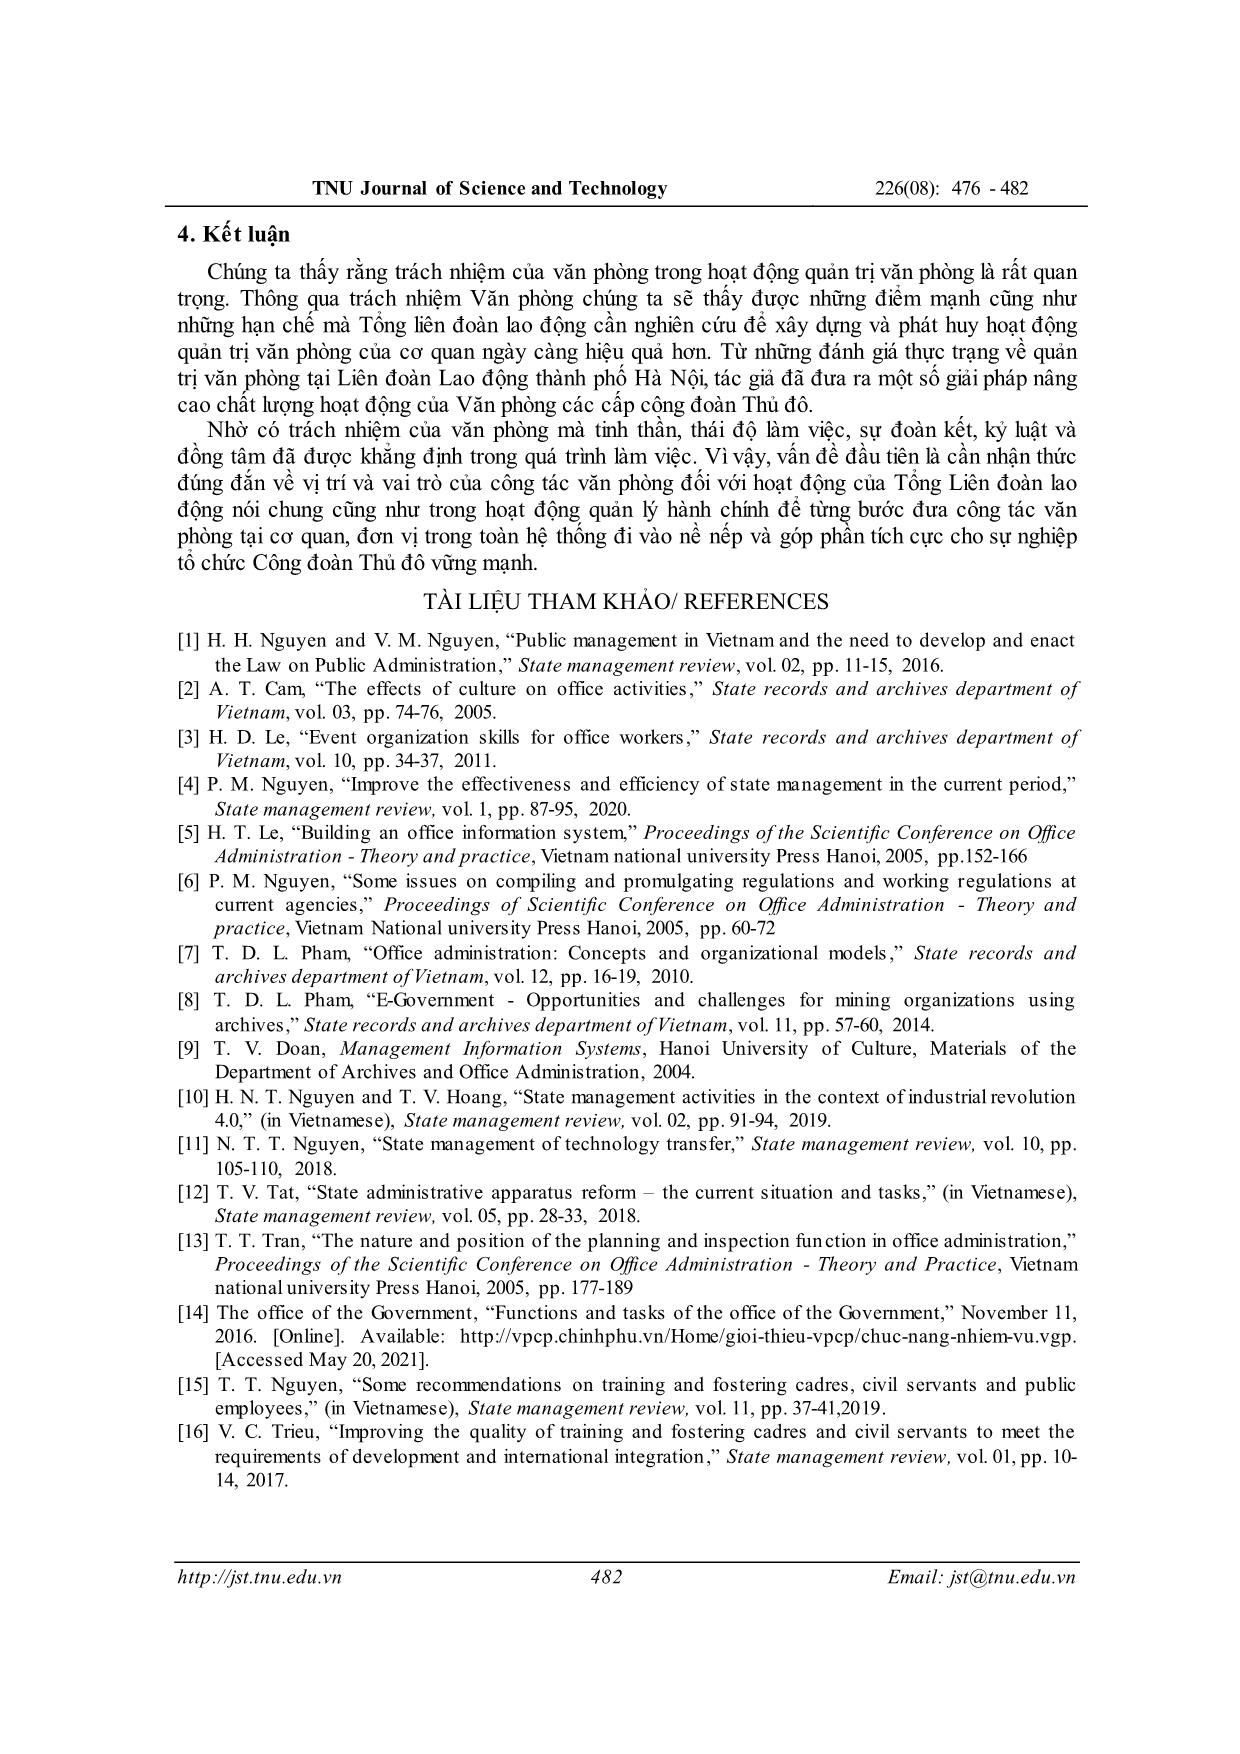 Trách nhiệm của văn phòng trong việc hoạt động quản trị văn phòng tại liên đoàn lao động thành phố Hà Nội trang 7